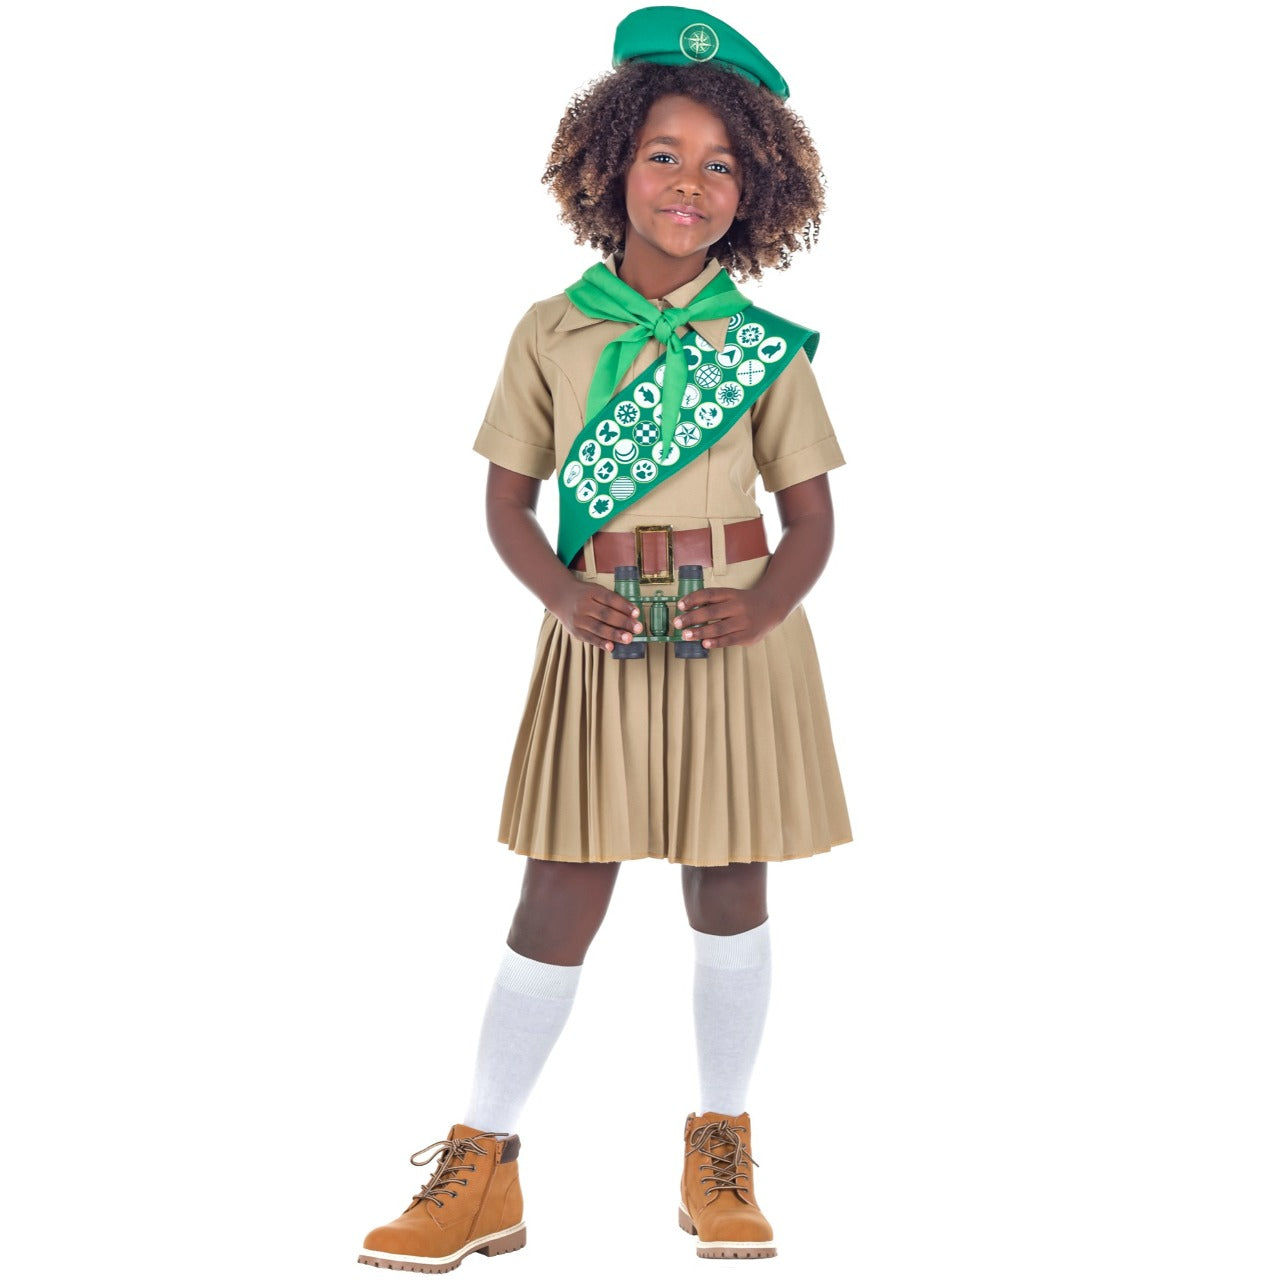 Disfraz de Boy Scout para niña